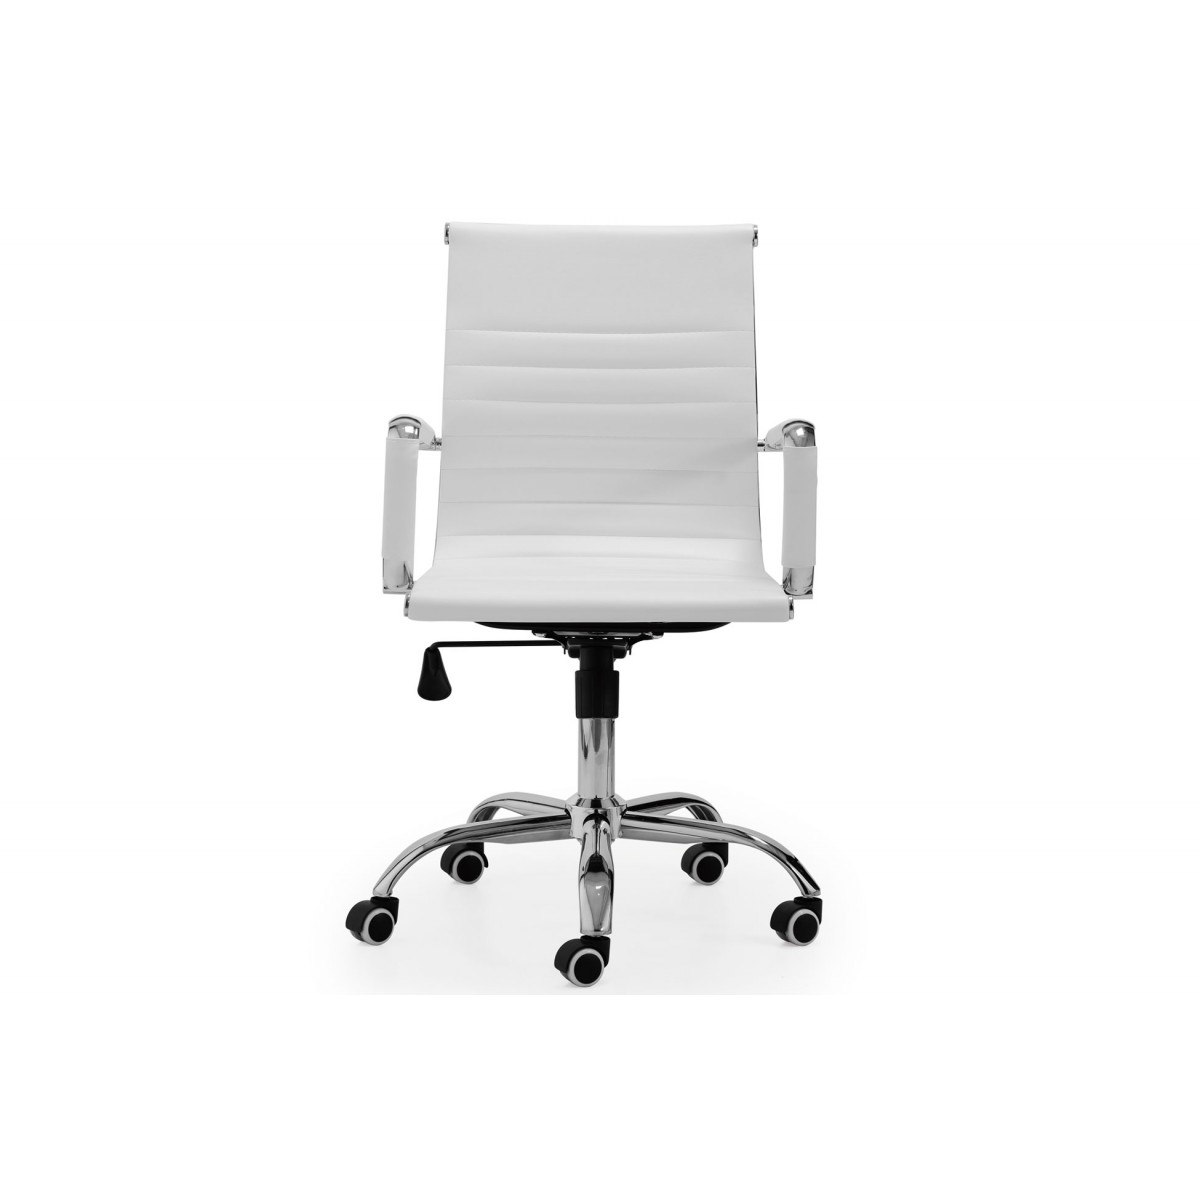 silla de escritorio Kie blanca - sillas- venta online muebles - exposición